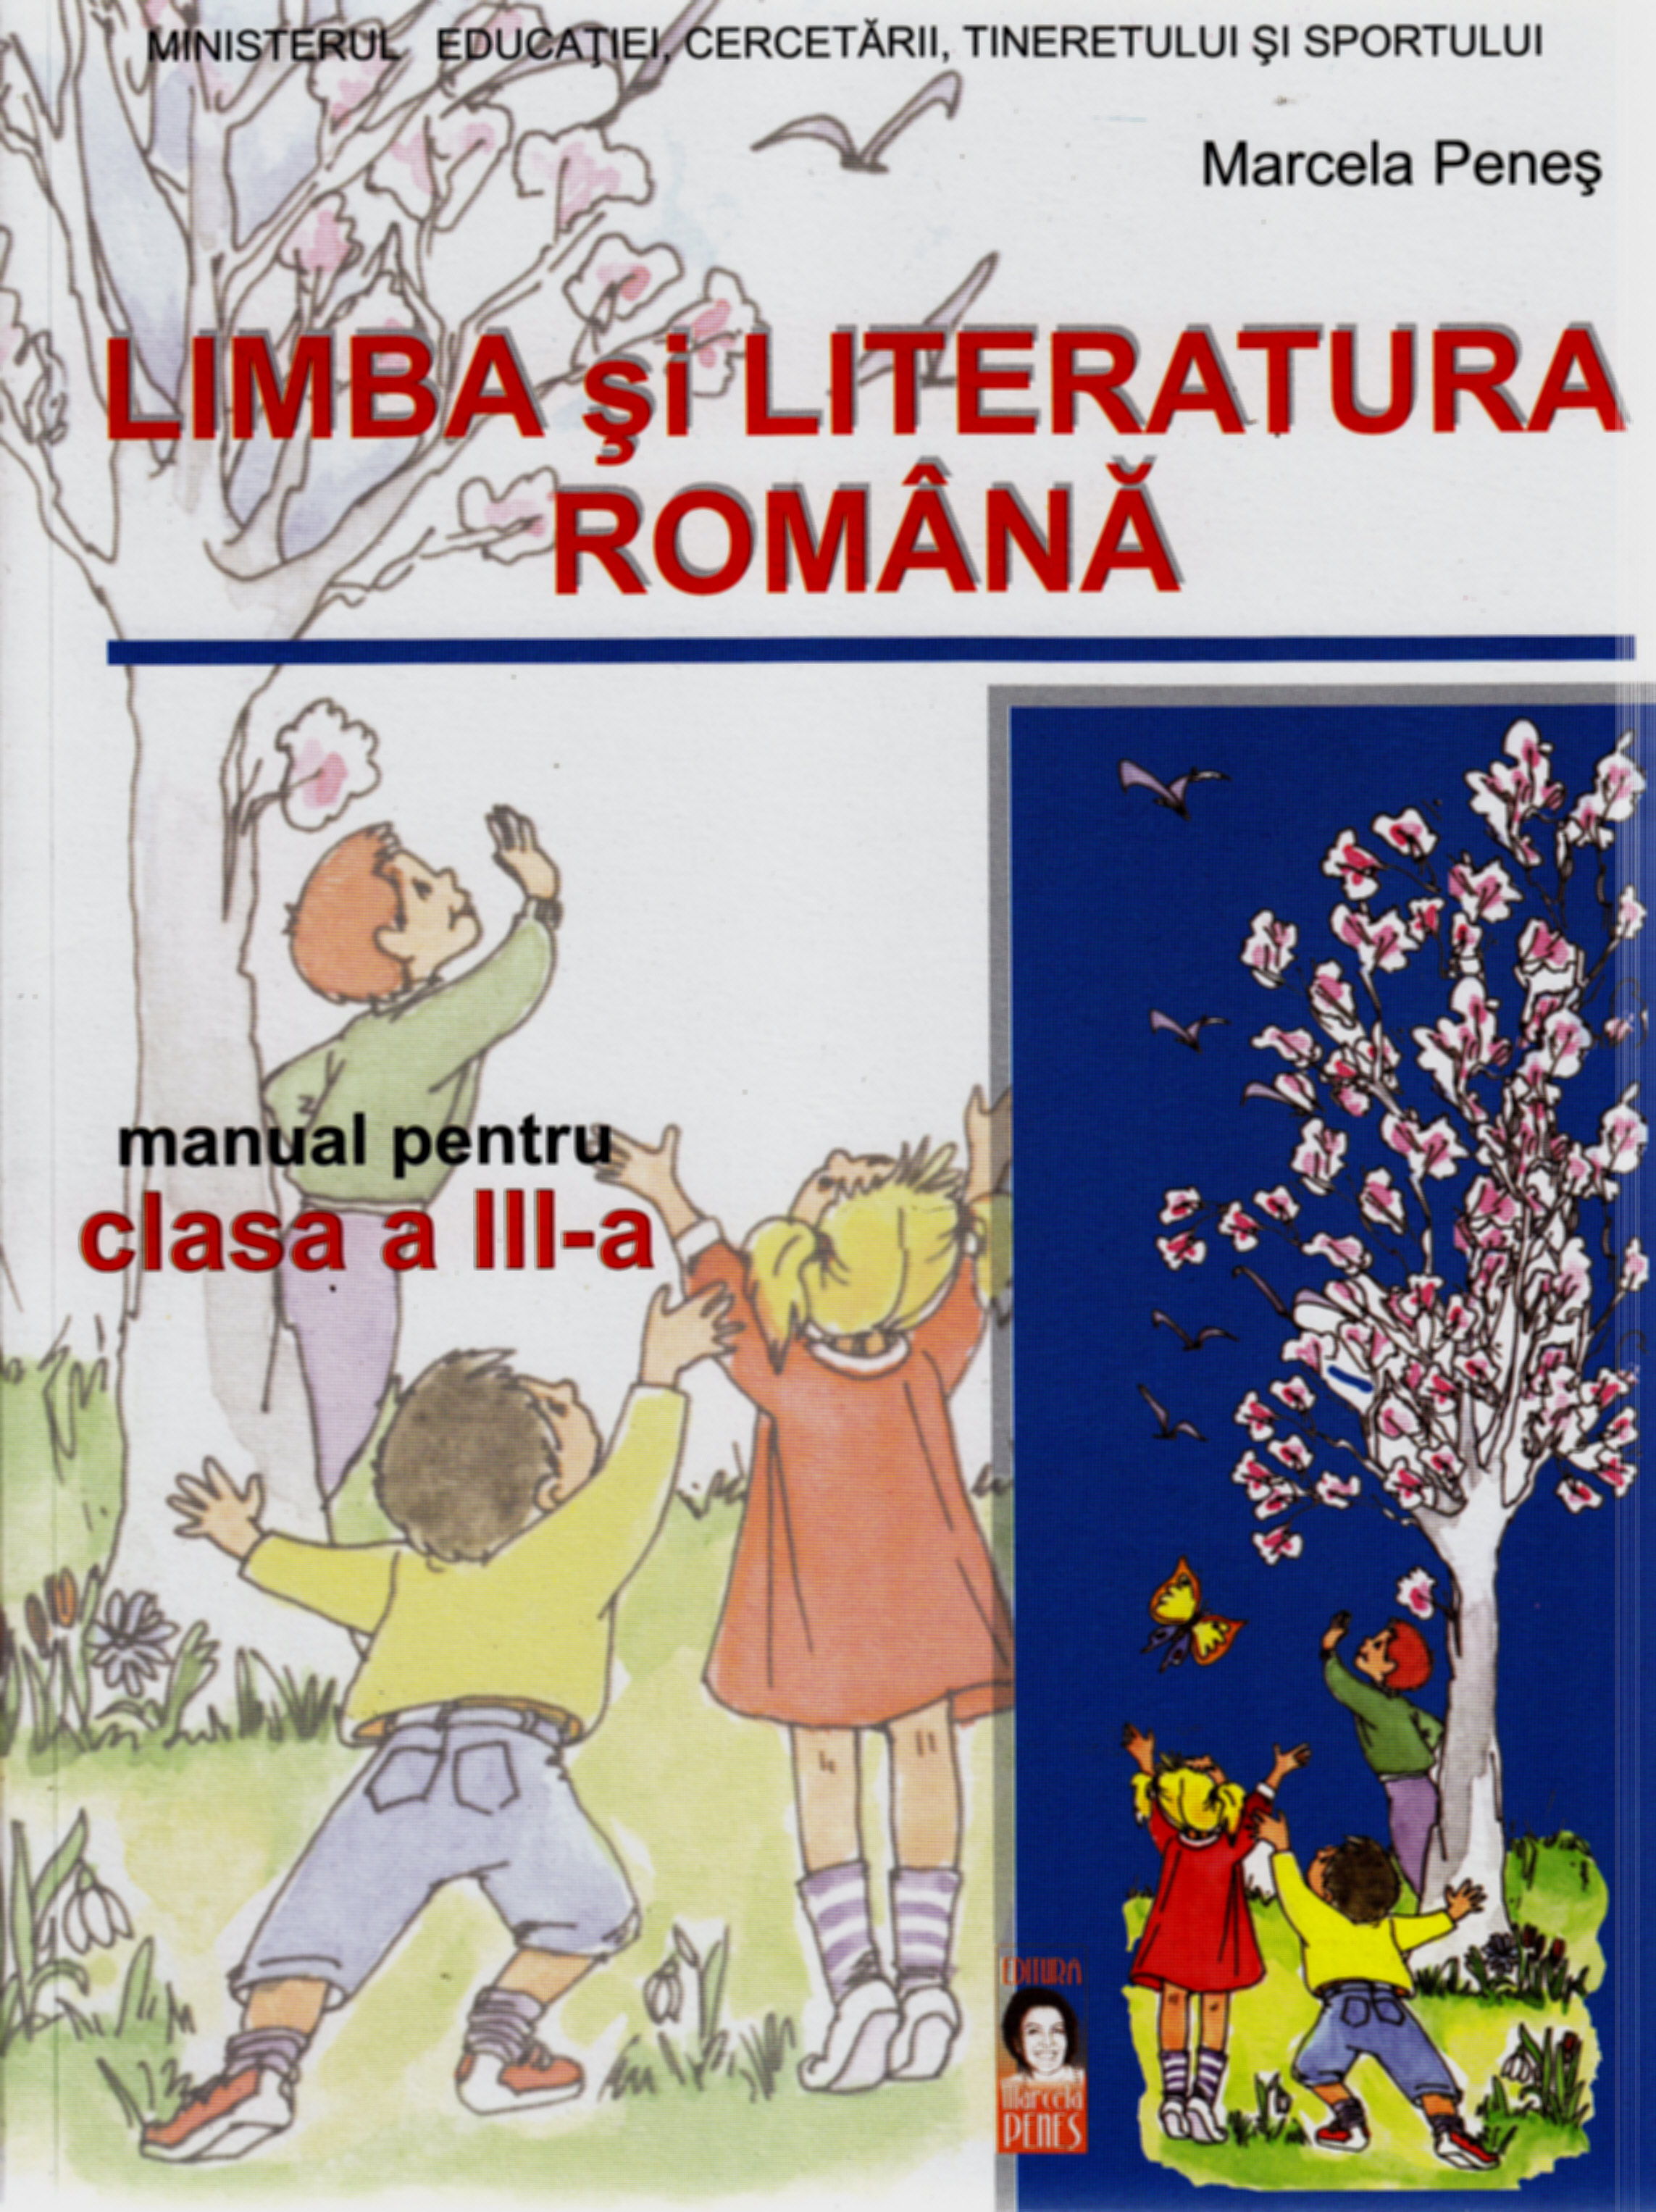 Manual romana clasa 3 - Marcela Penes